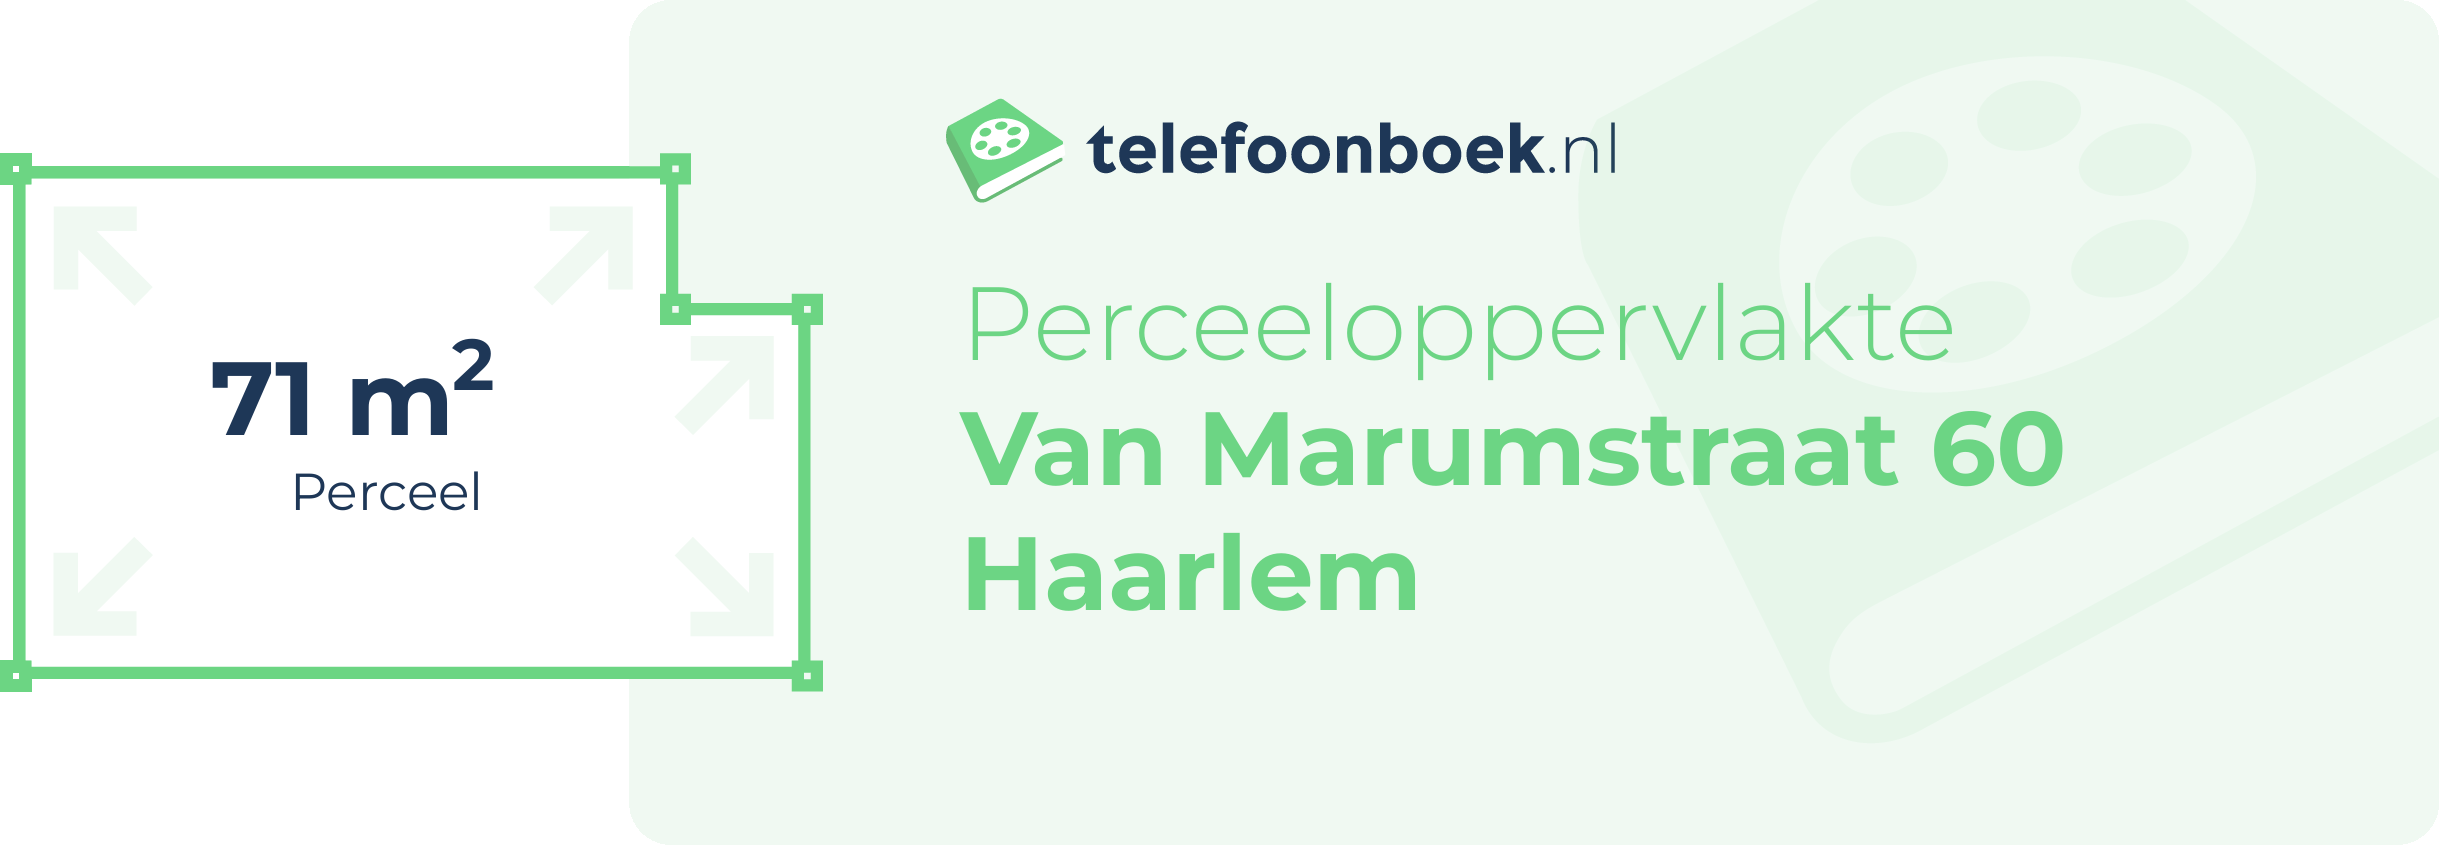 Perceeloppervlakte Van Marumstraat 60 Haarlem